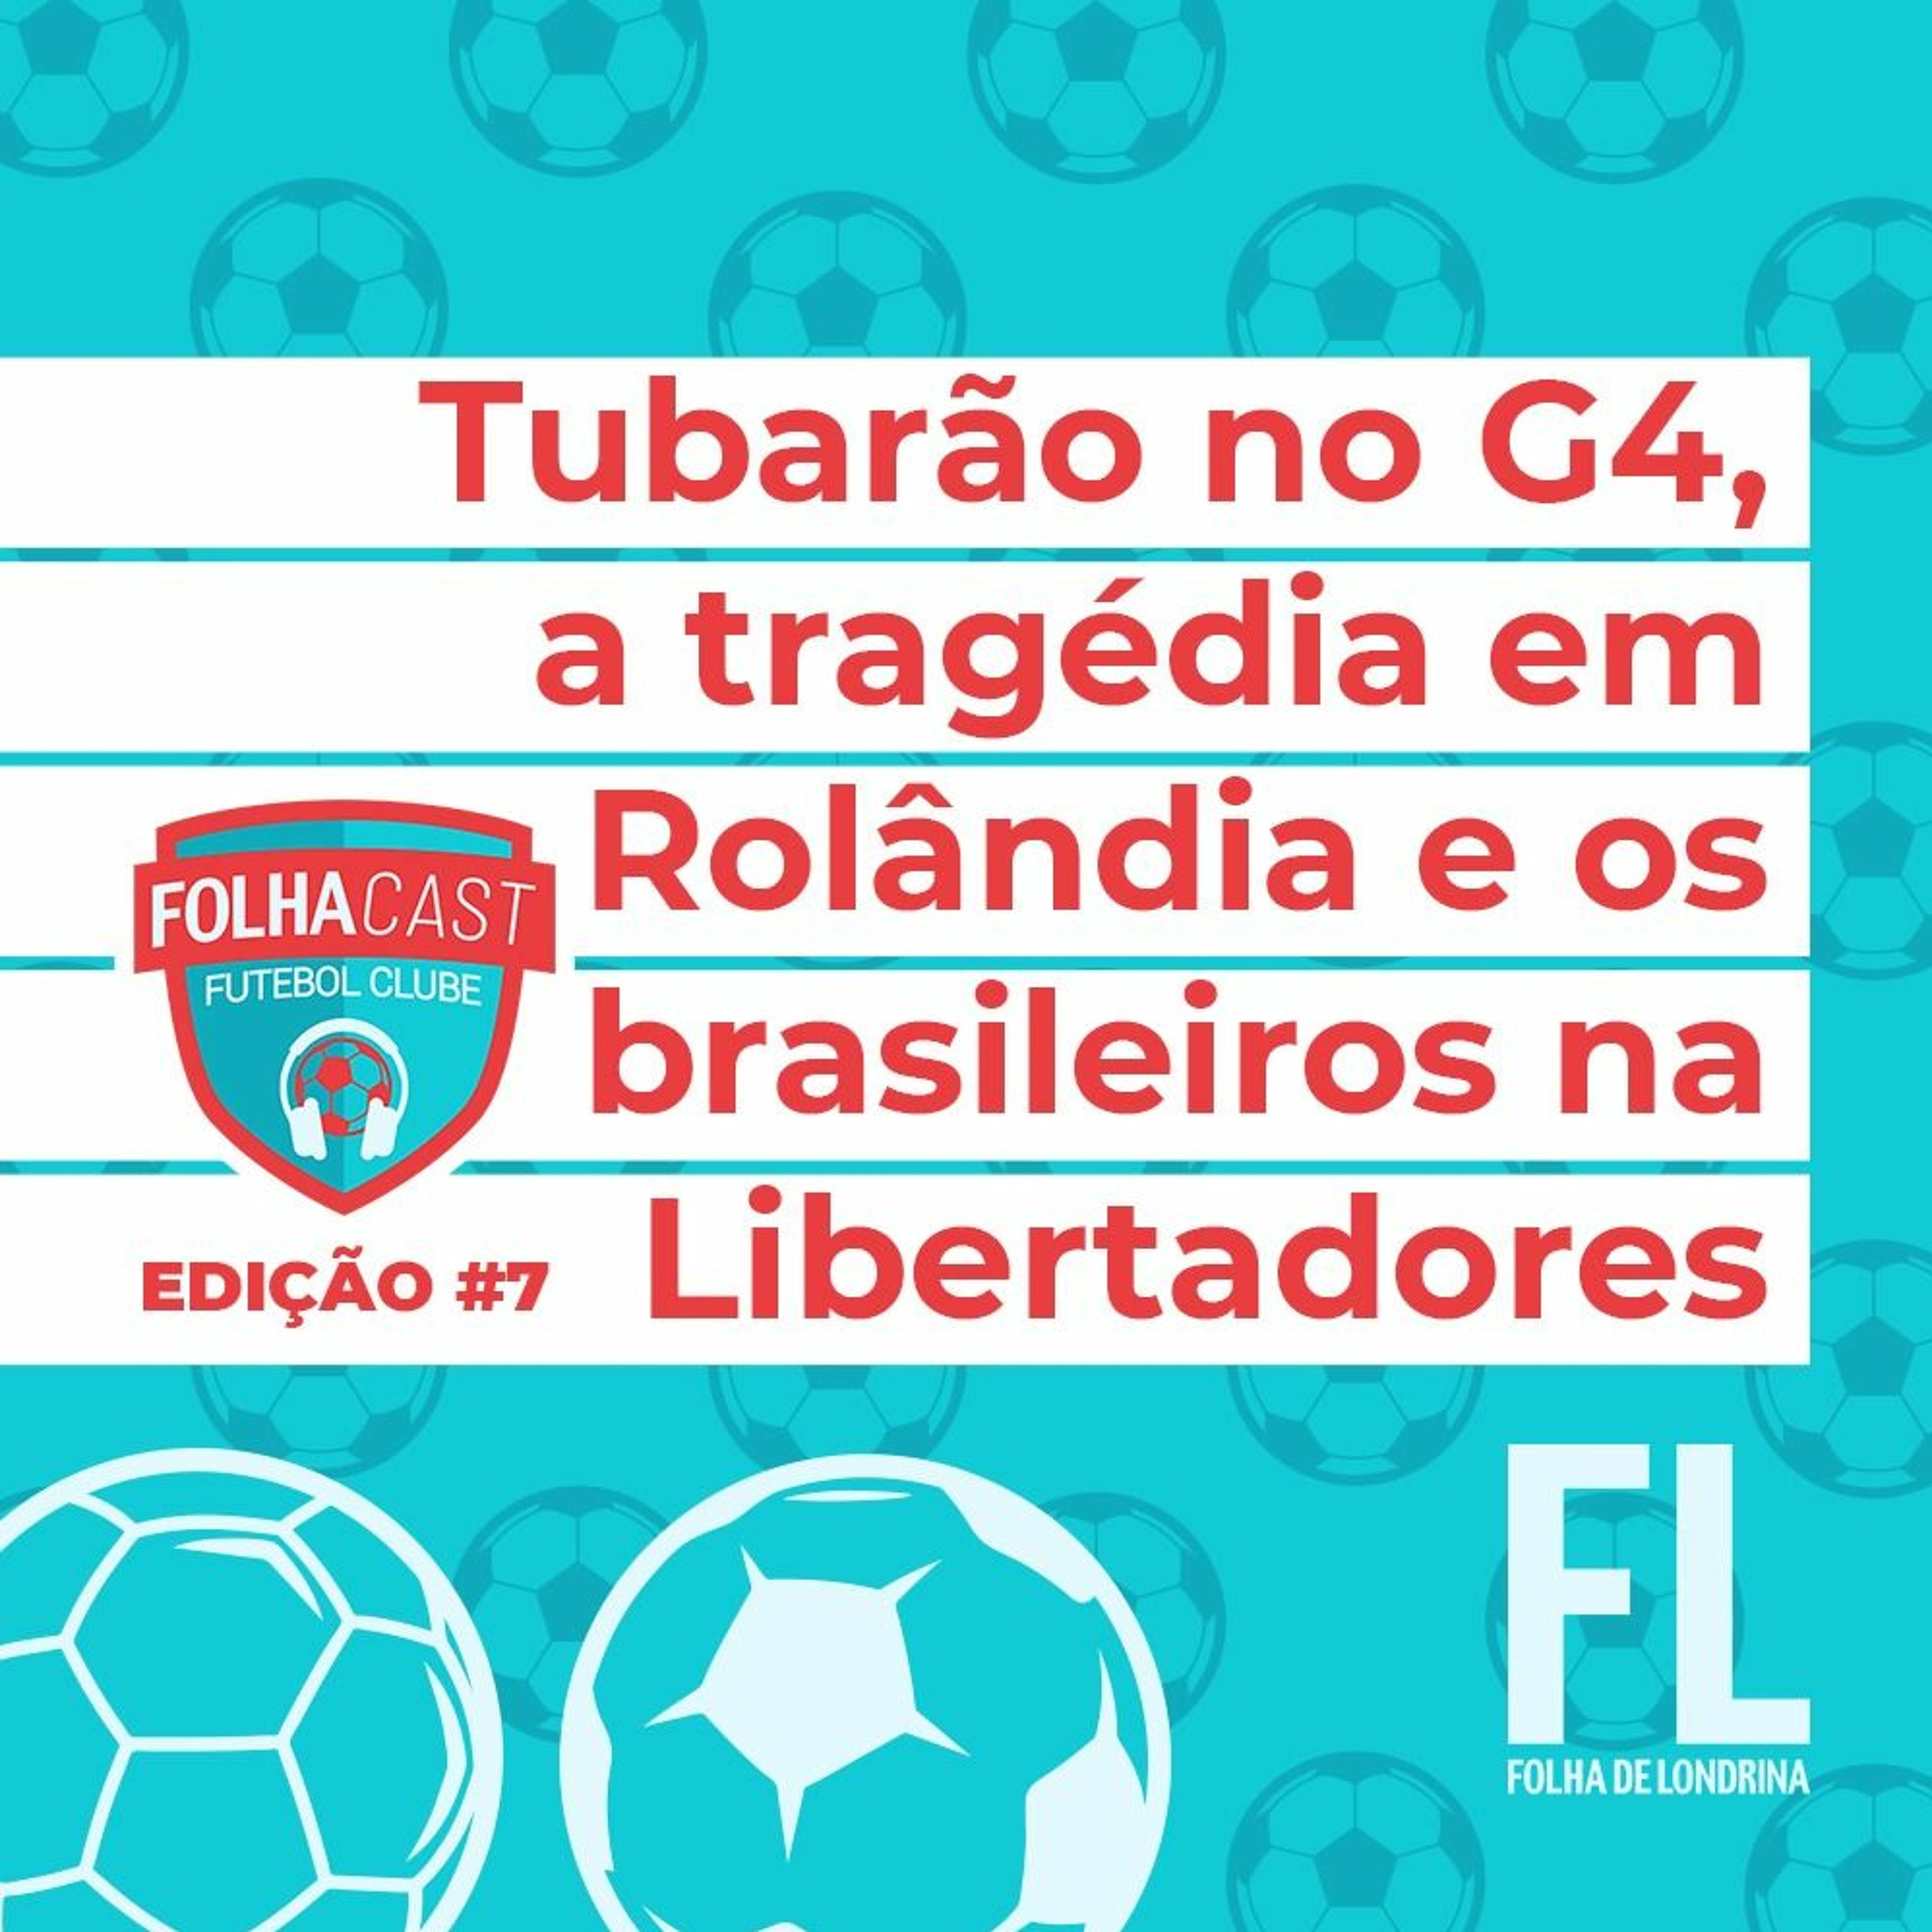 FOLHACAST FUTEBOL CLUBE #7 | Tubarão no G4, tragédia em Rolândia e Libertadores